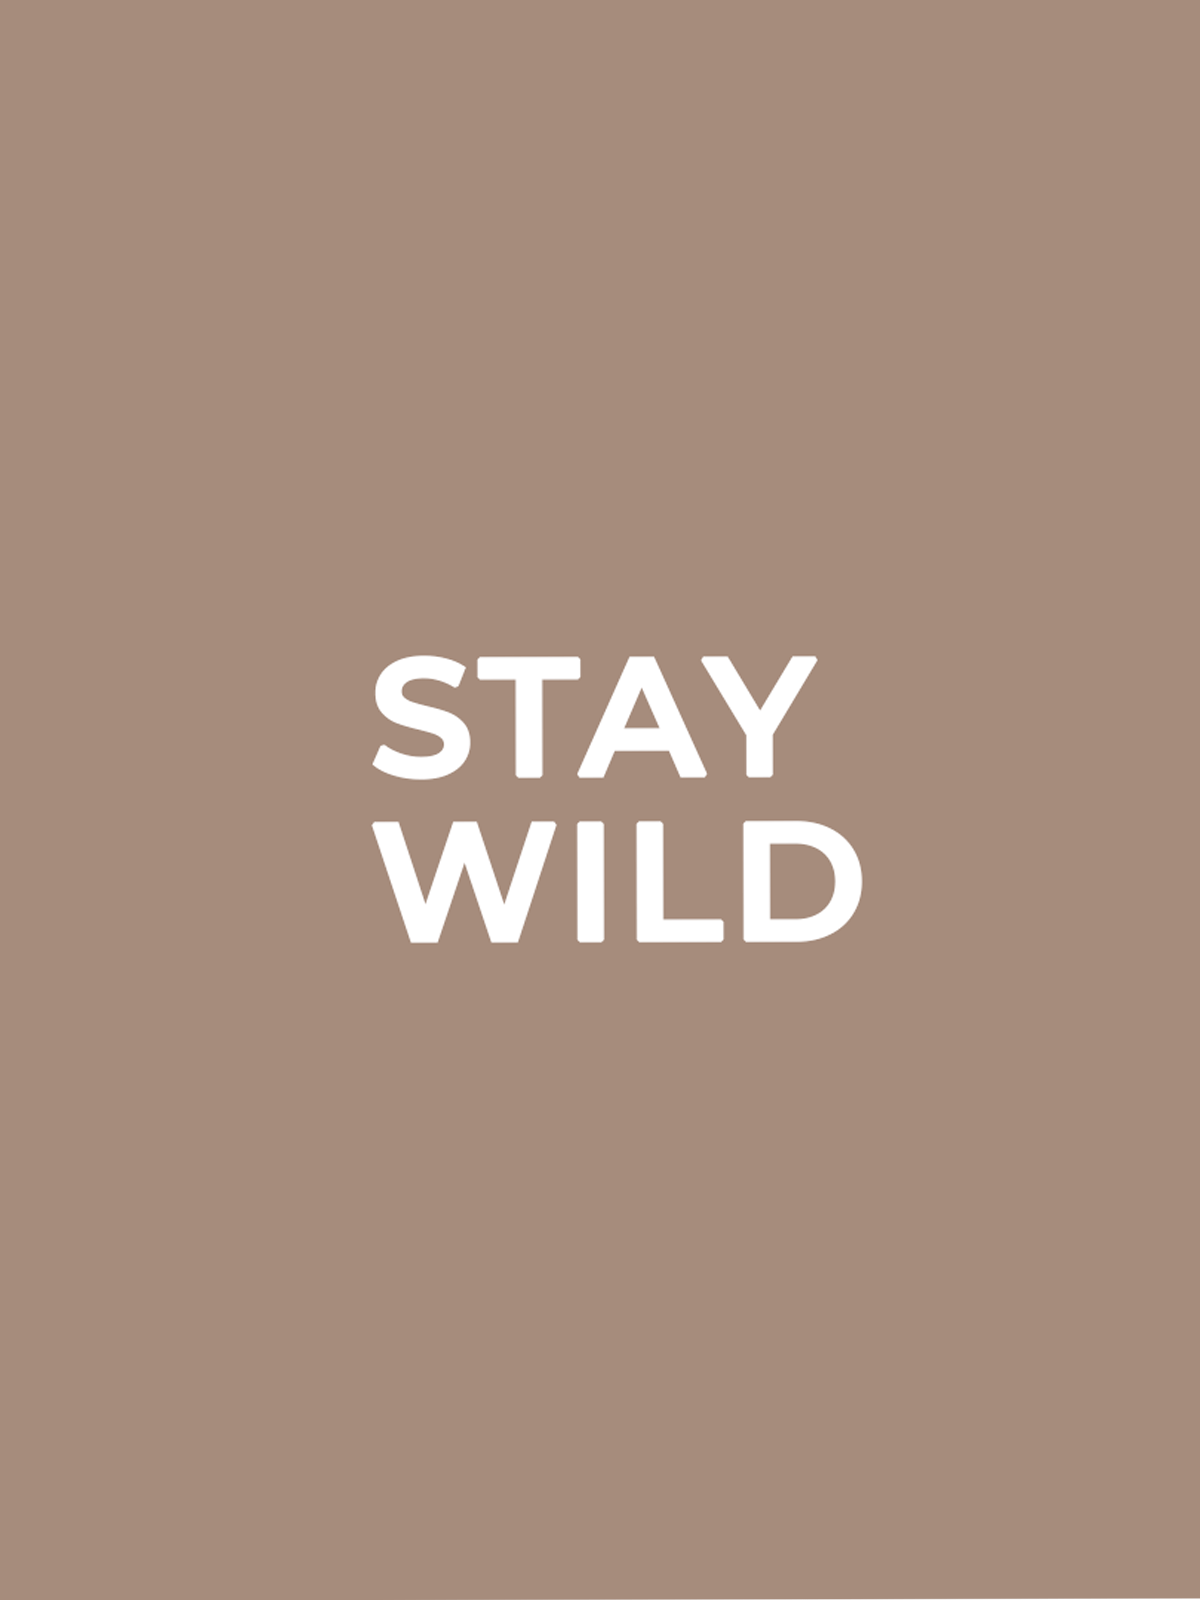 Beige bakgrund med vit text "stay wild"